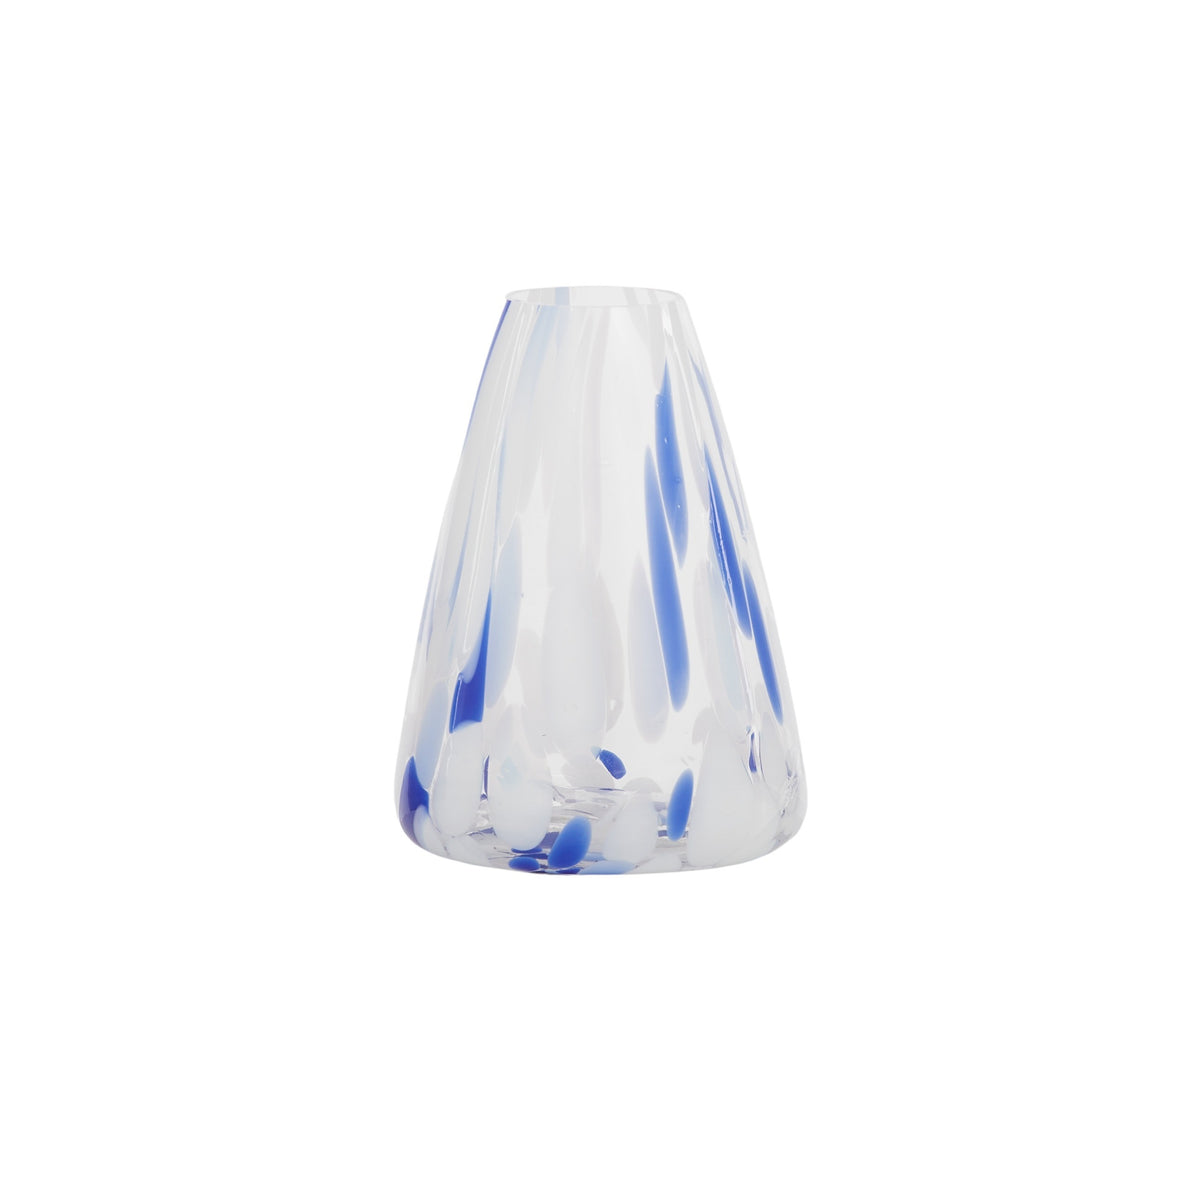 Carnivale Glass Vase - Blue/White